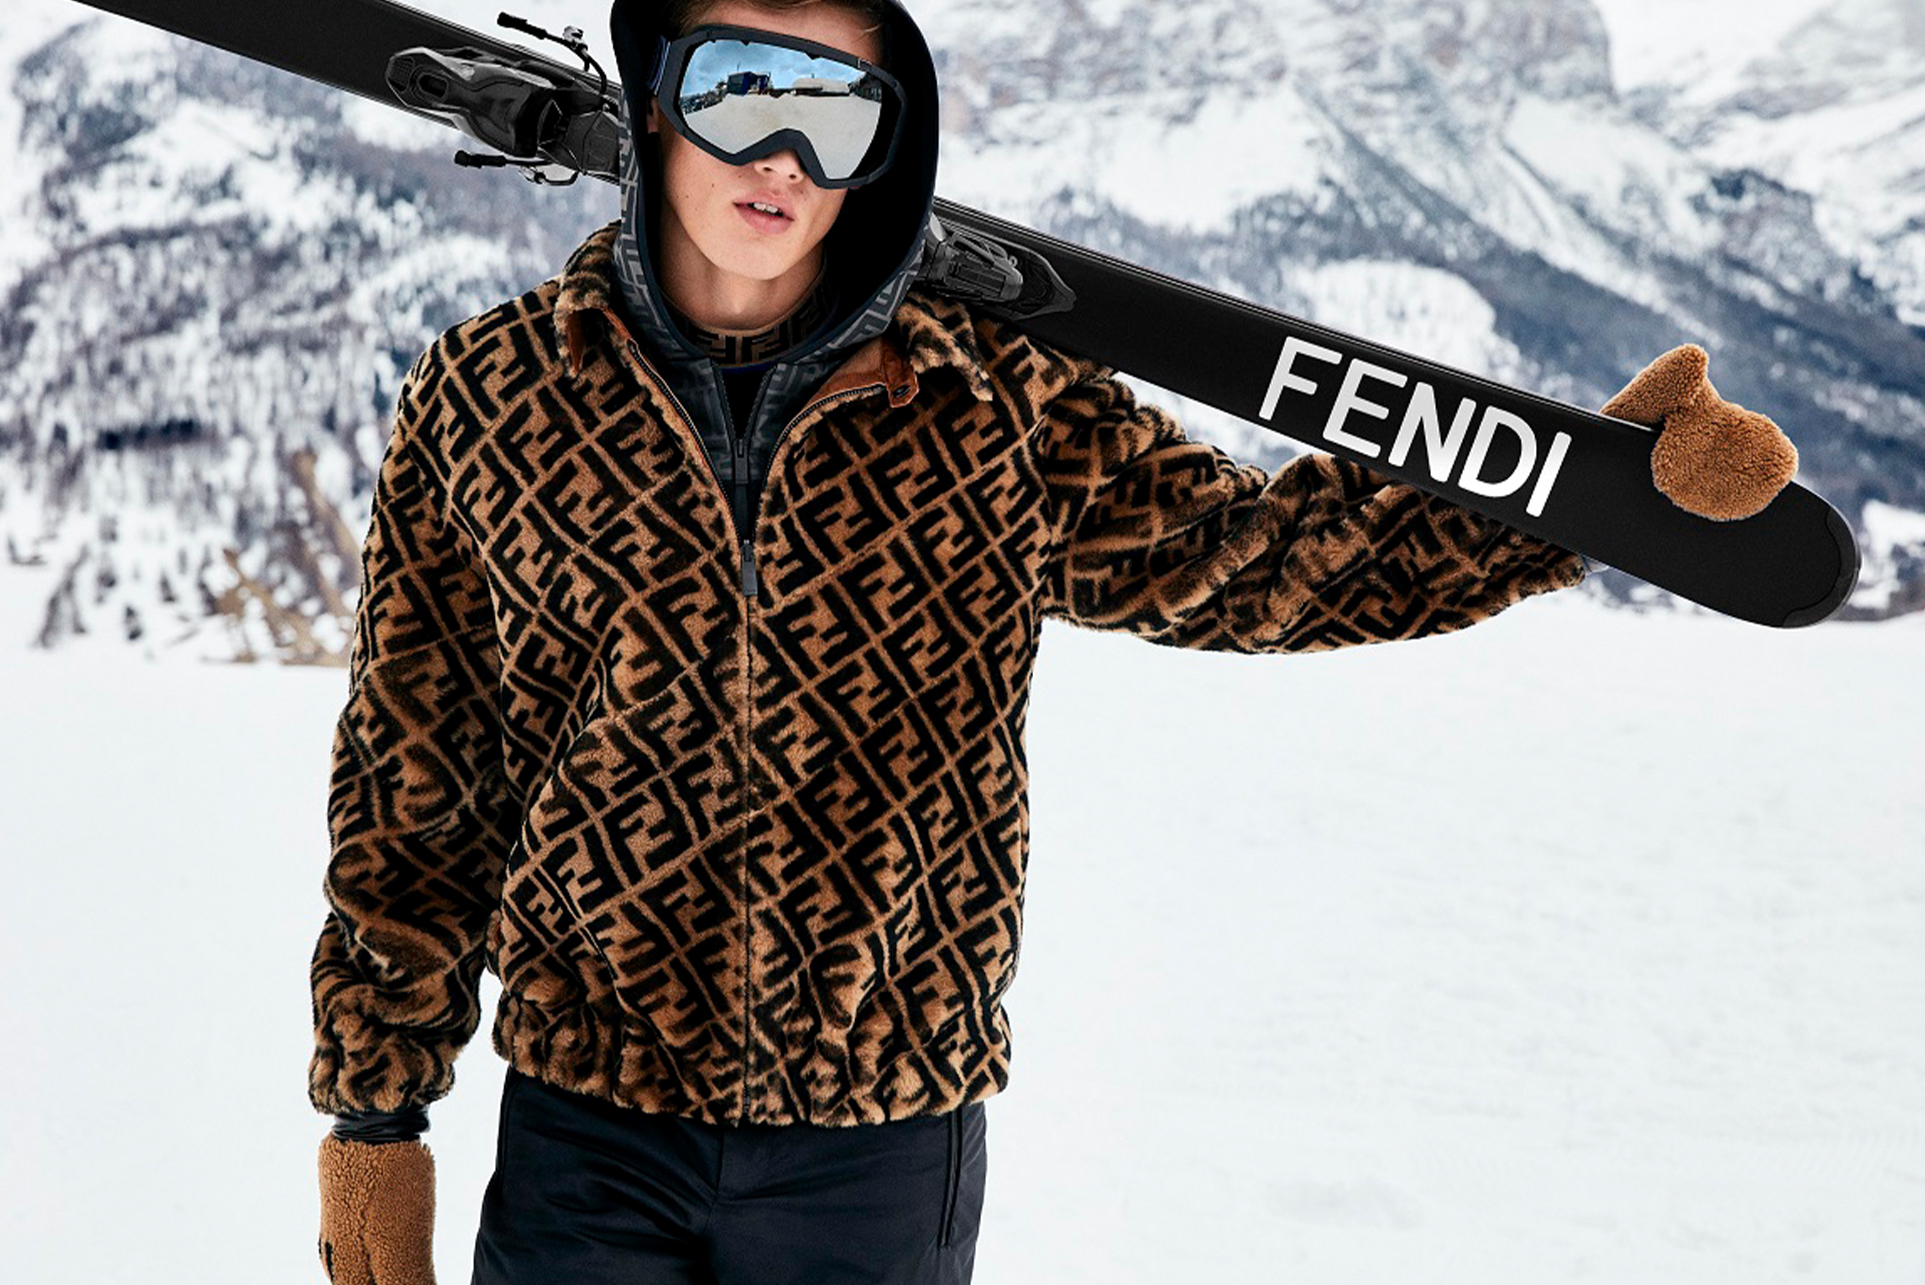 Dior Men推出專業滑雪運動系列？時尚品牌為何搶佔「貴族運動」市場？